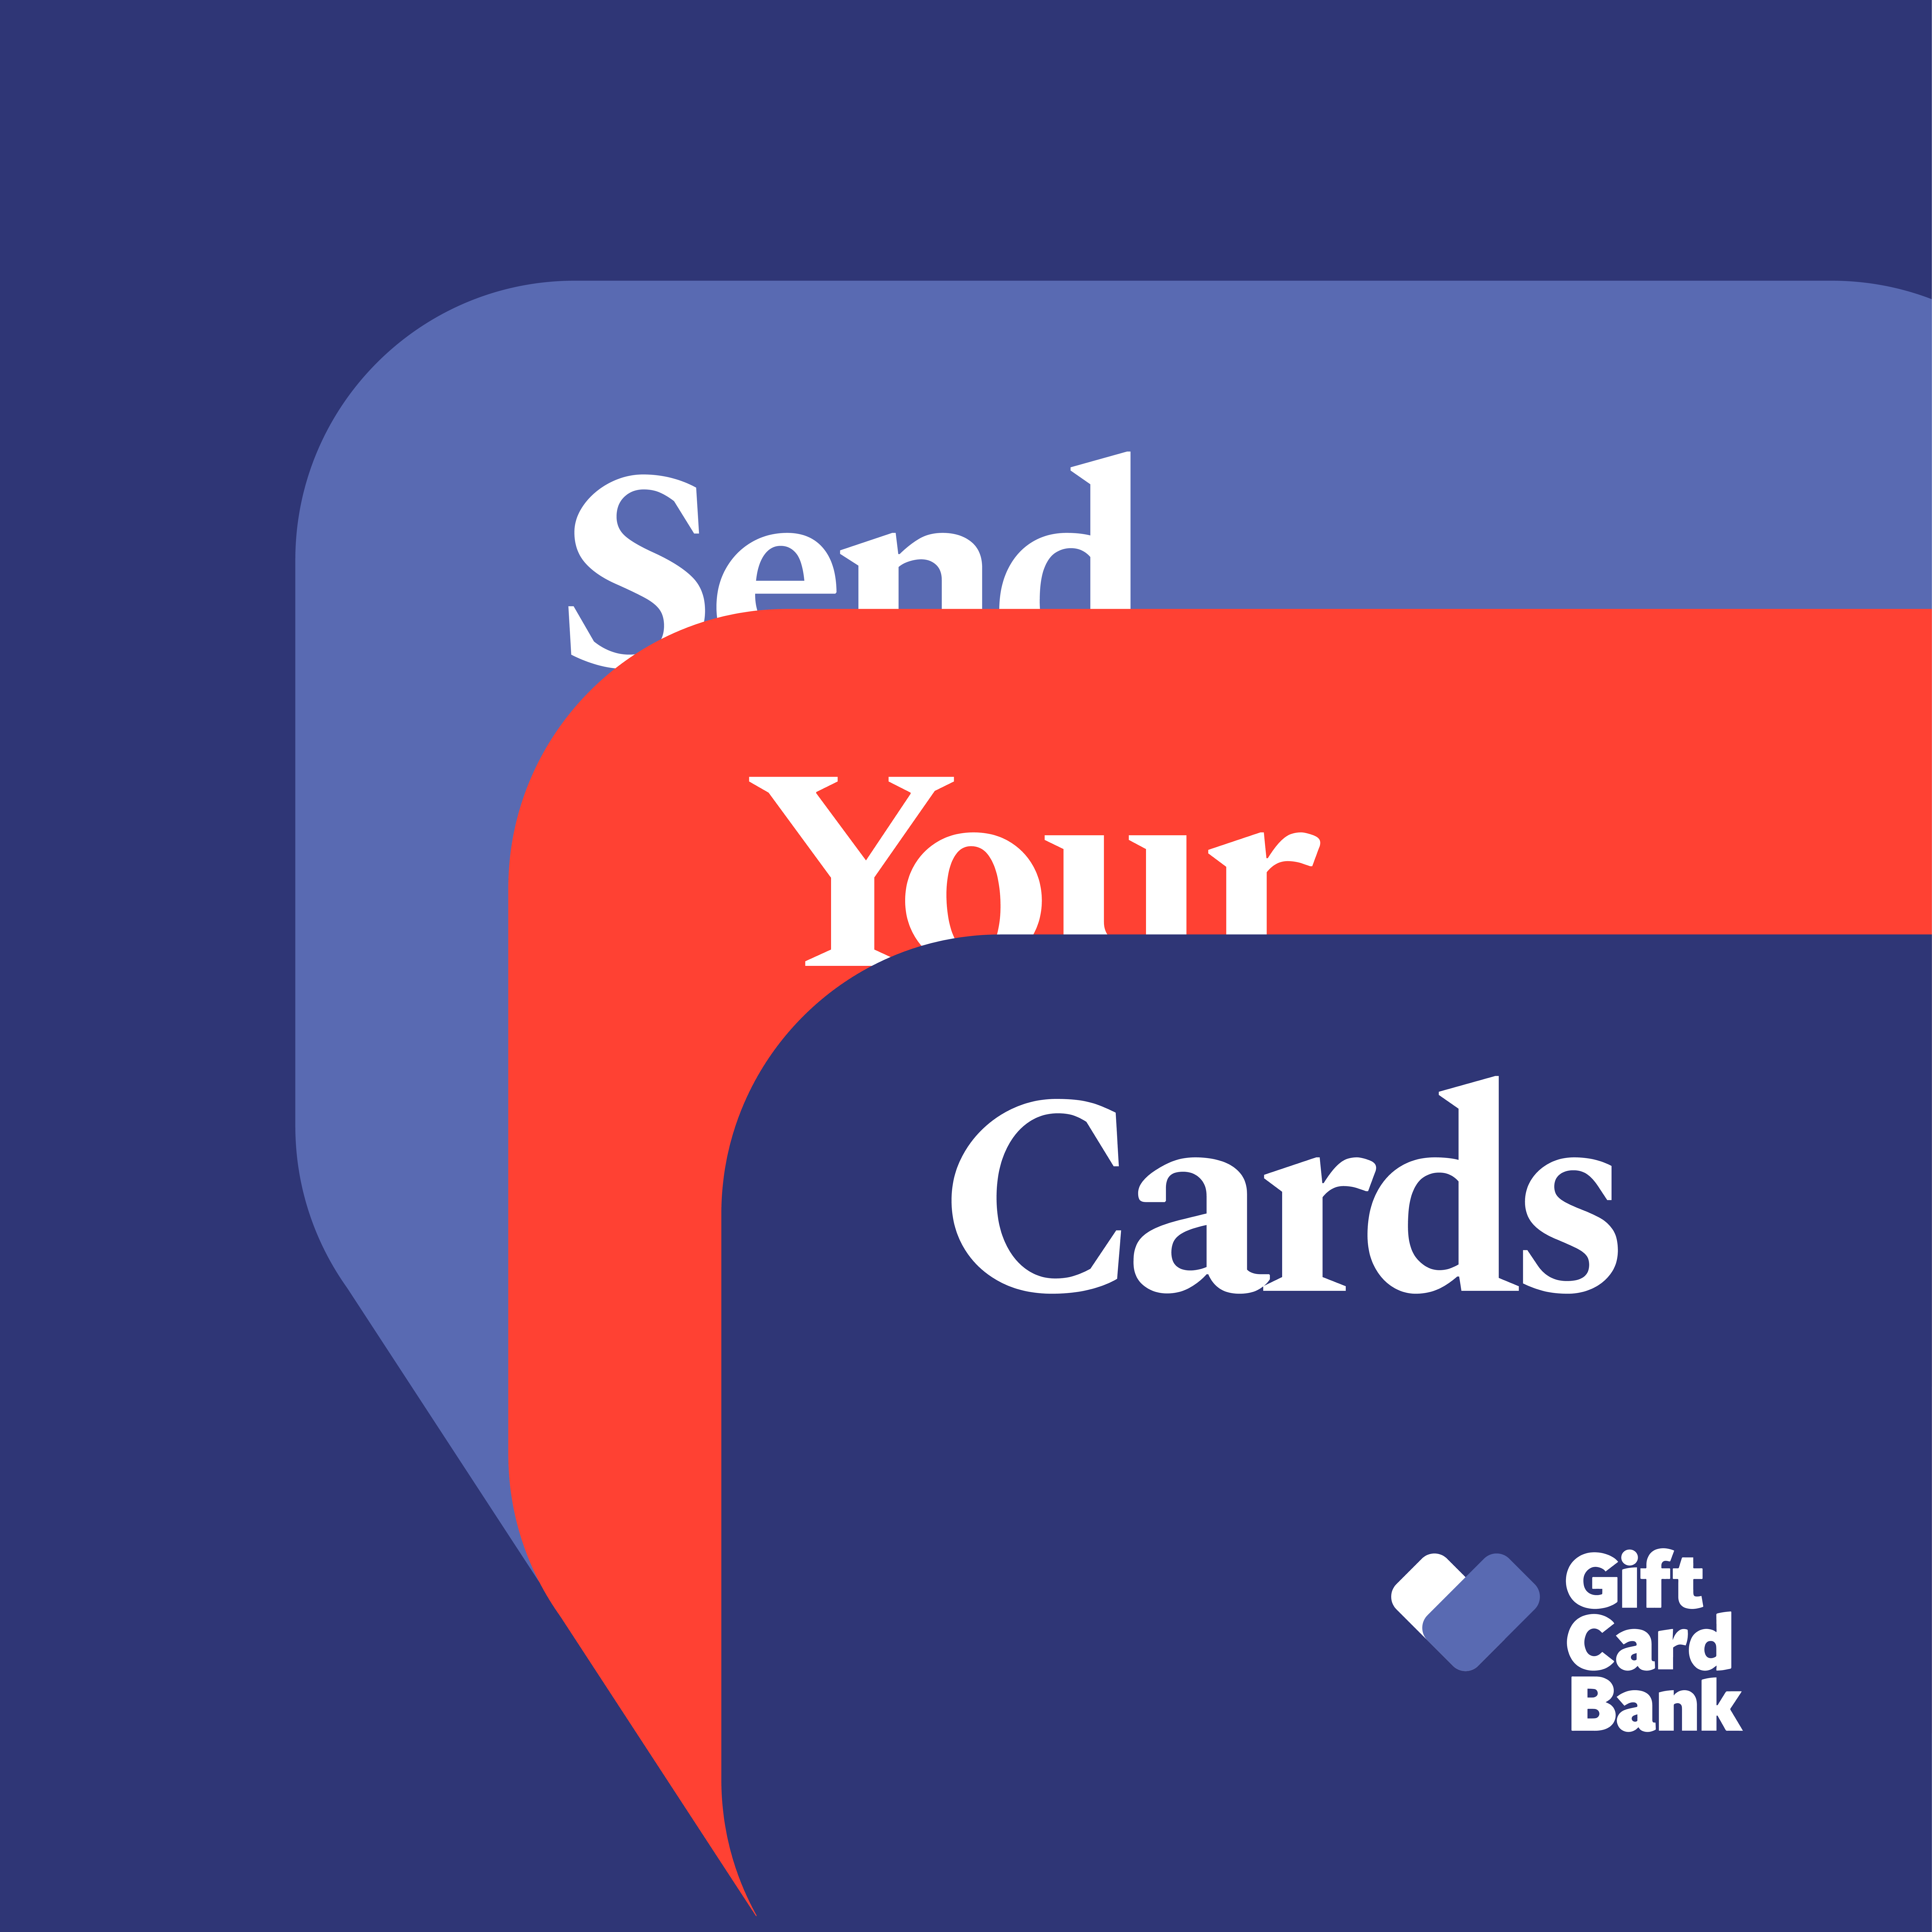 Gift Card Bank media 2